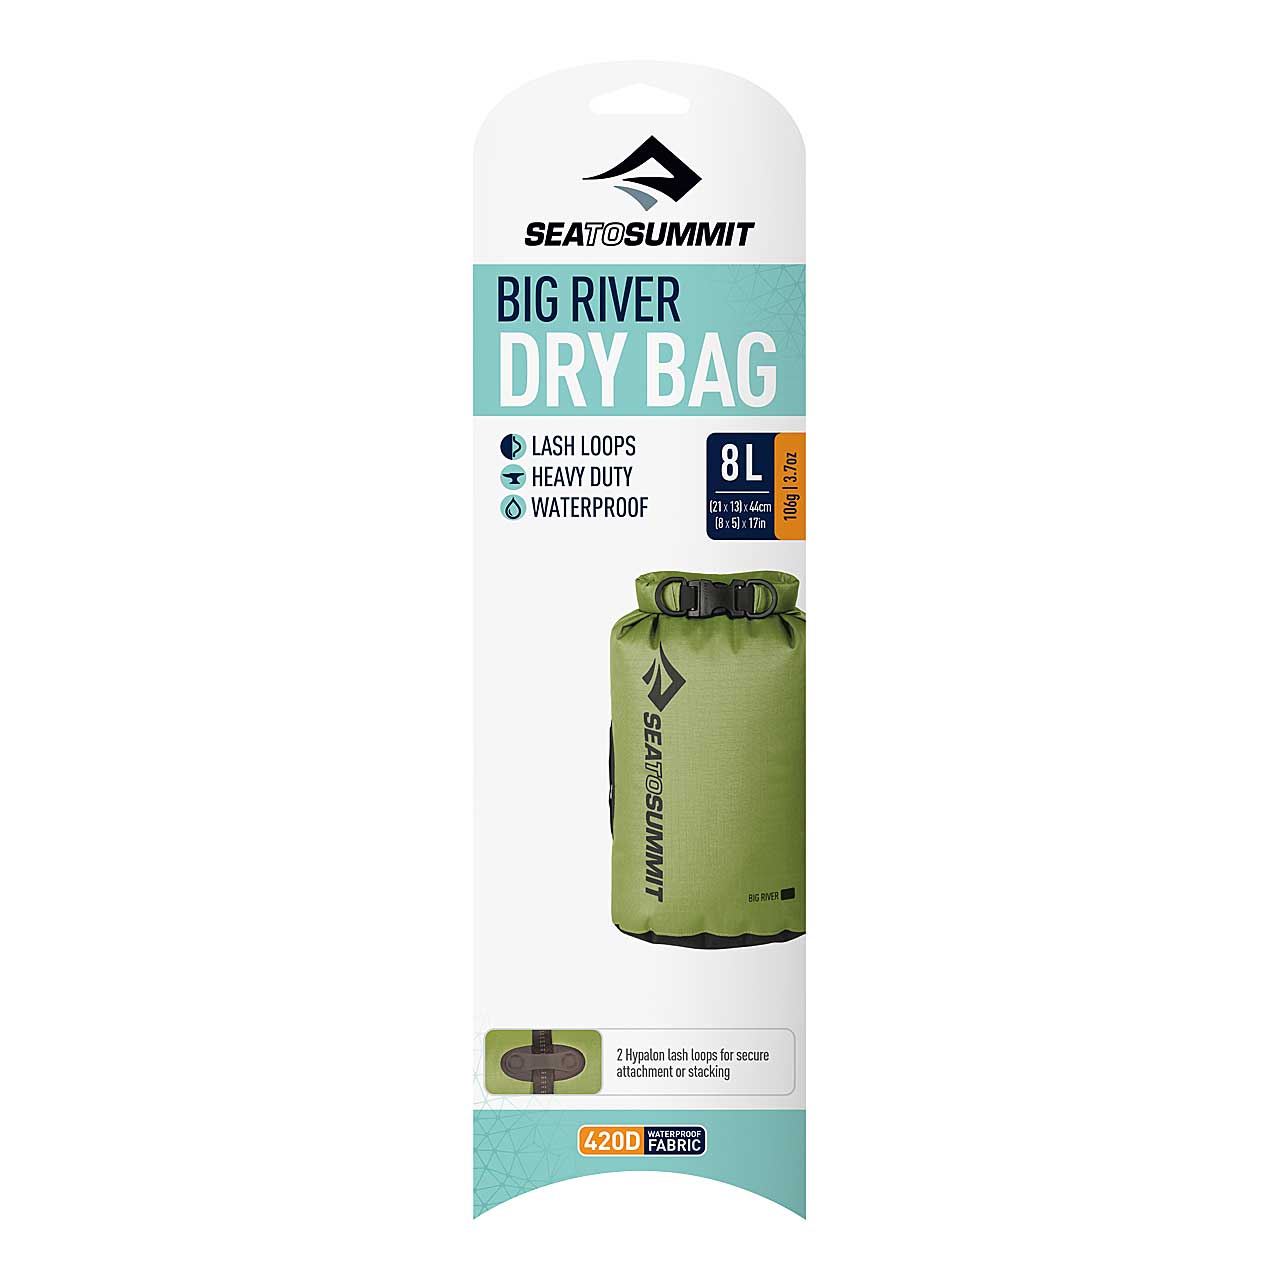 Big River Drybag 8 Liter